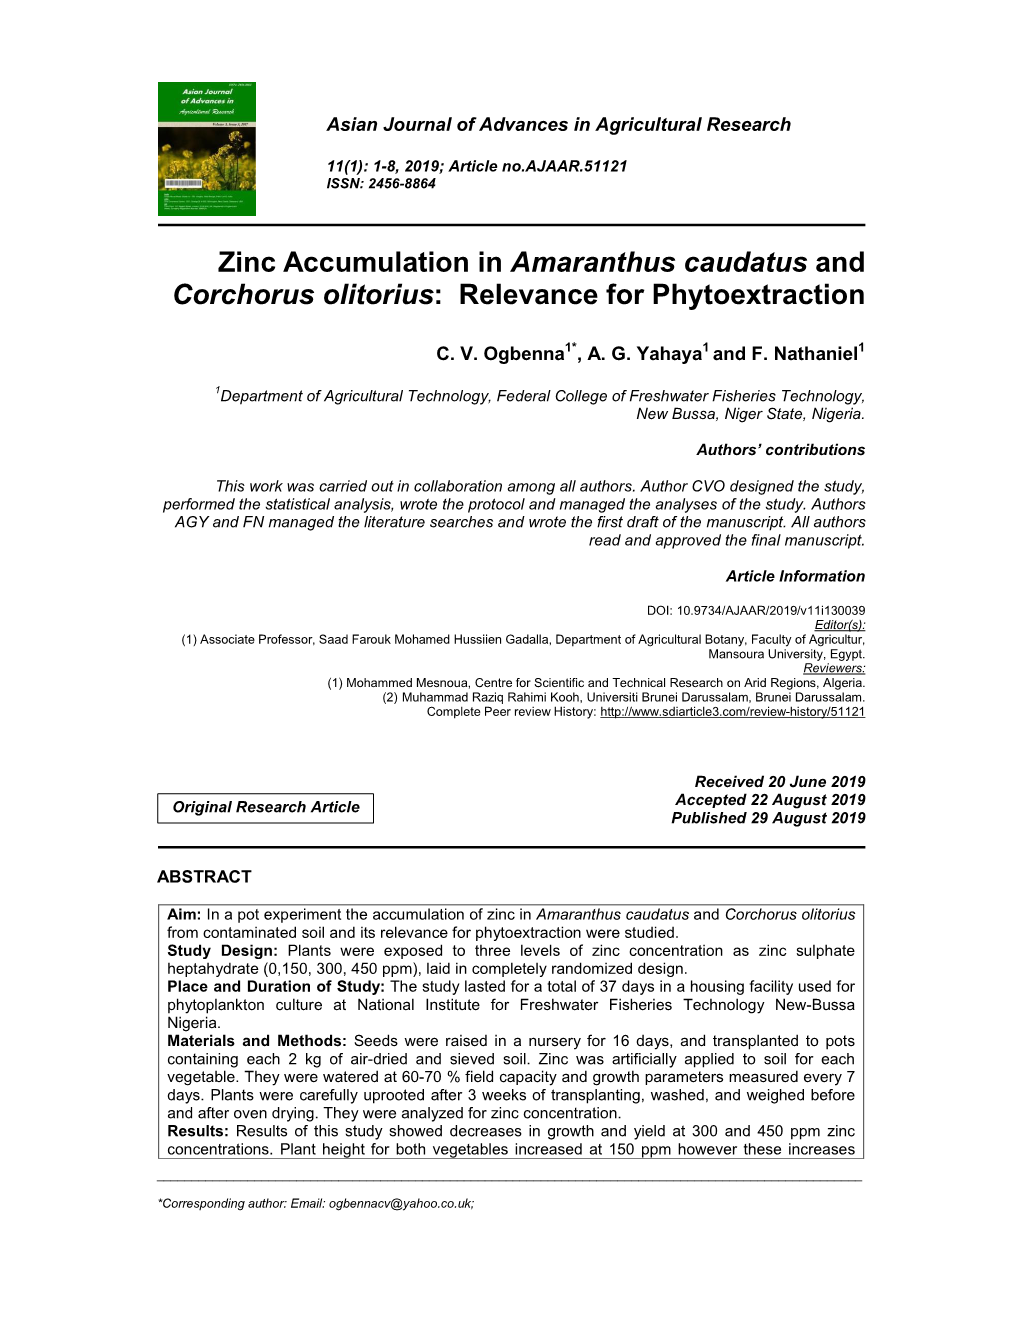 Zinc Accumulation in Amaranthus Caudatus and Corchorus Olitorius: Relevance for Phytoextraction